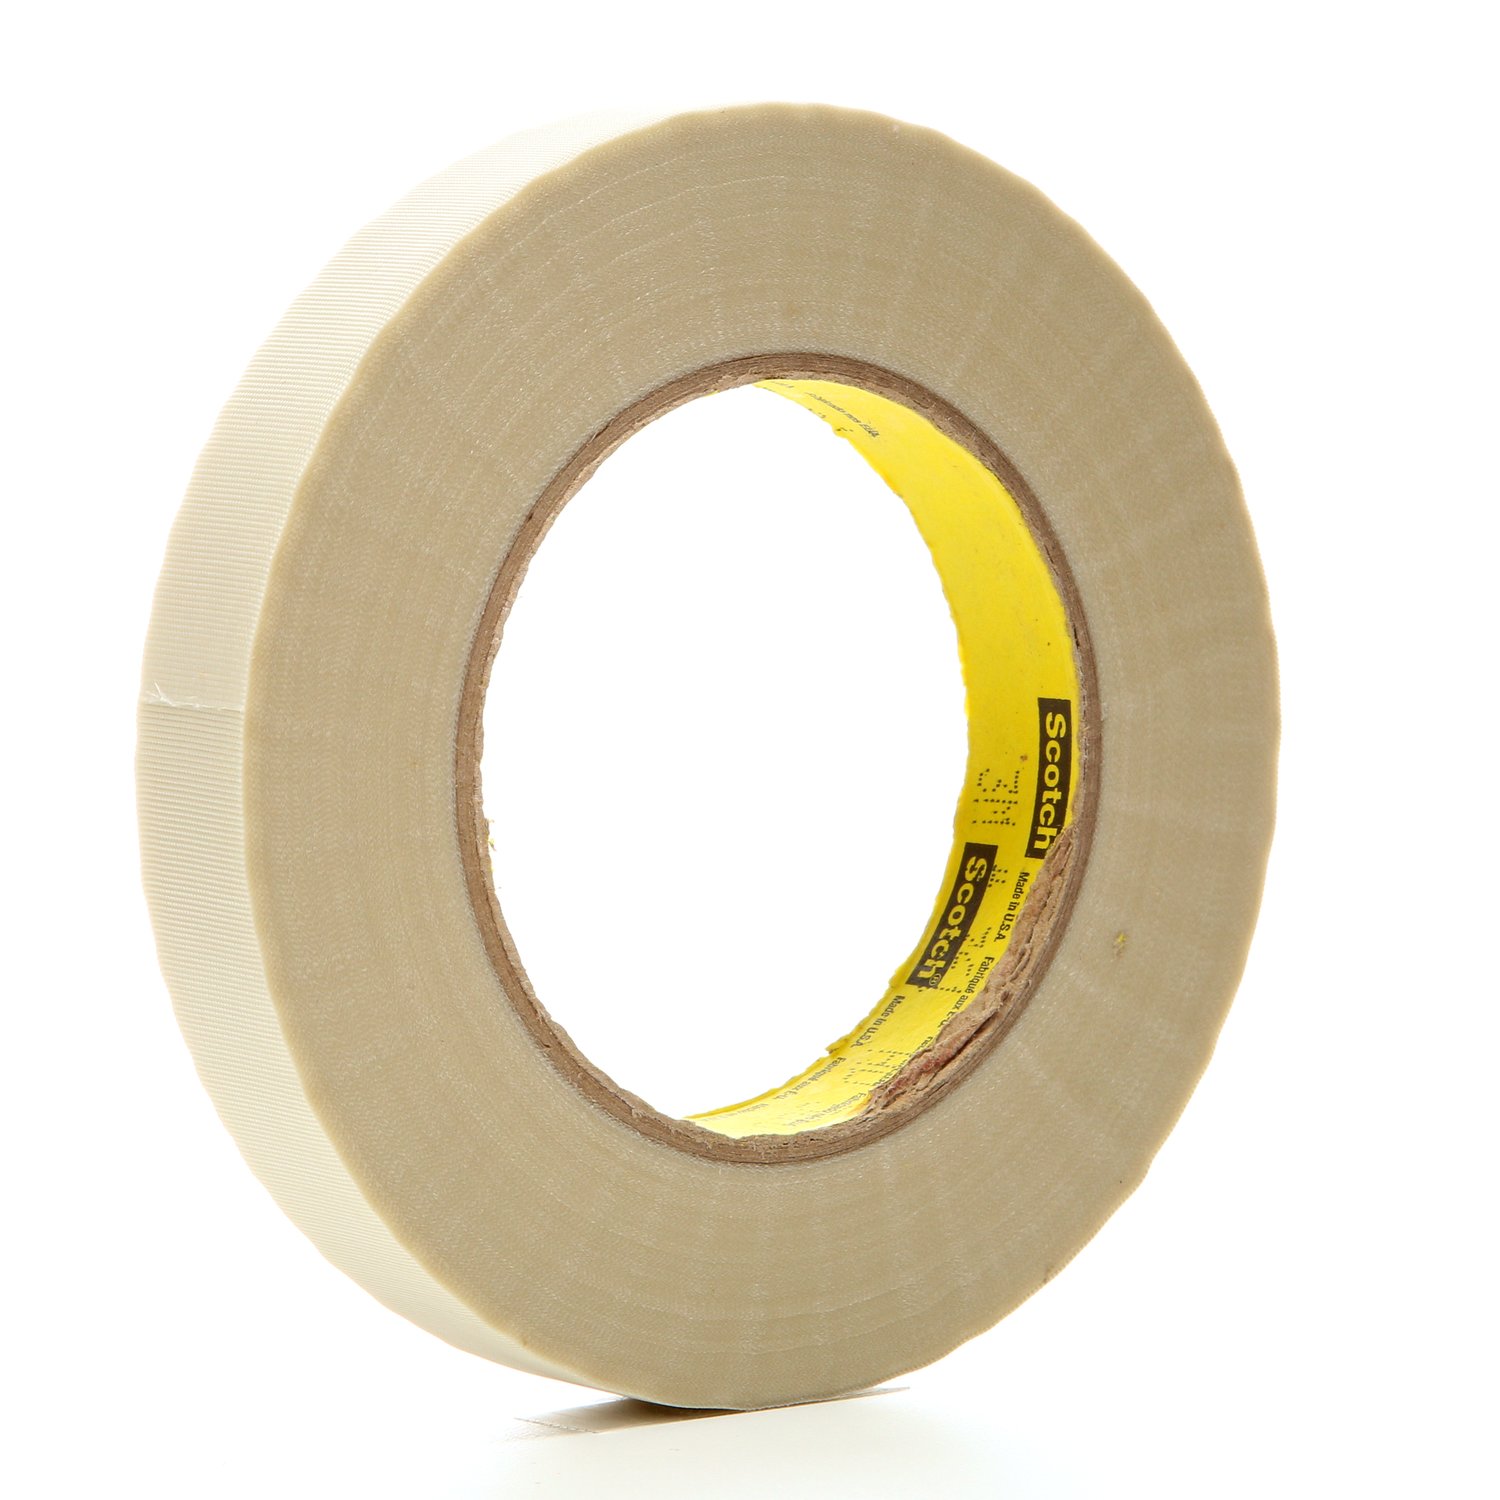 7000047441 - 3M Glass Cloth Tape 361, White, 3/4 in x 60 yd, 6.4 mil, 48 rolls per
case